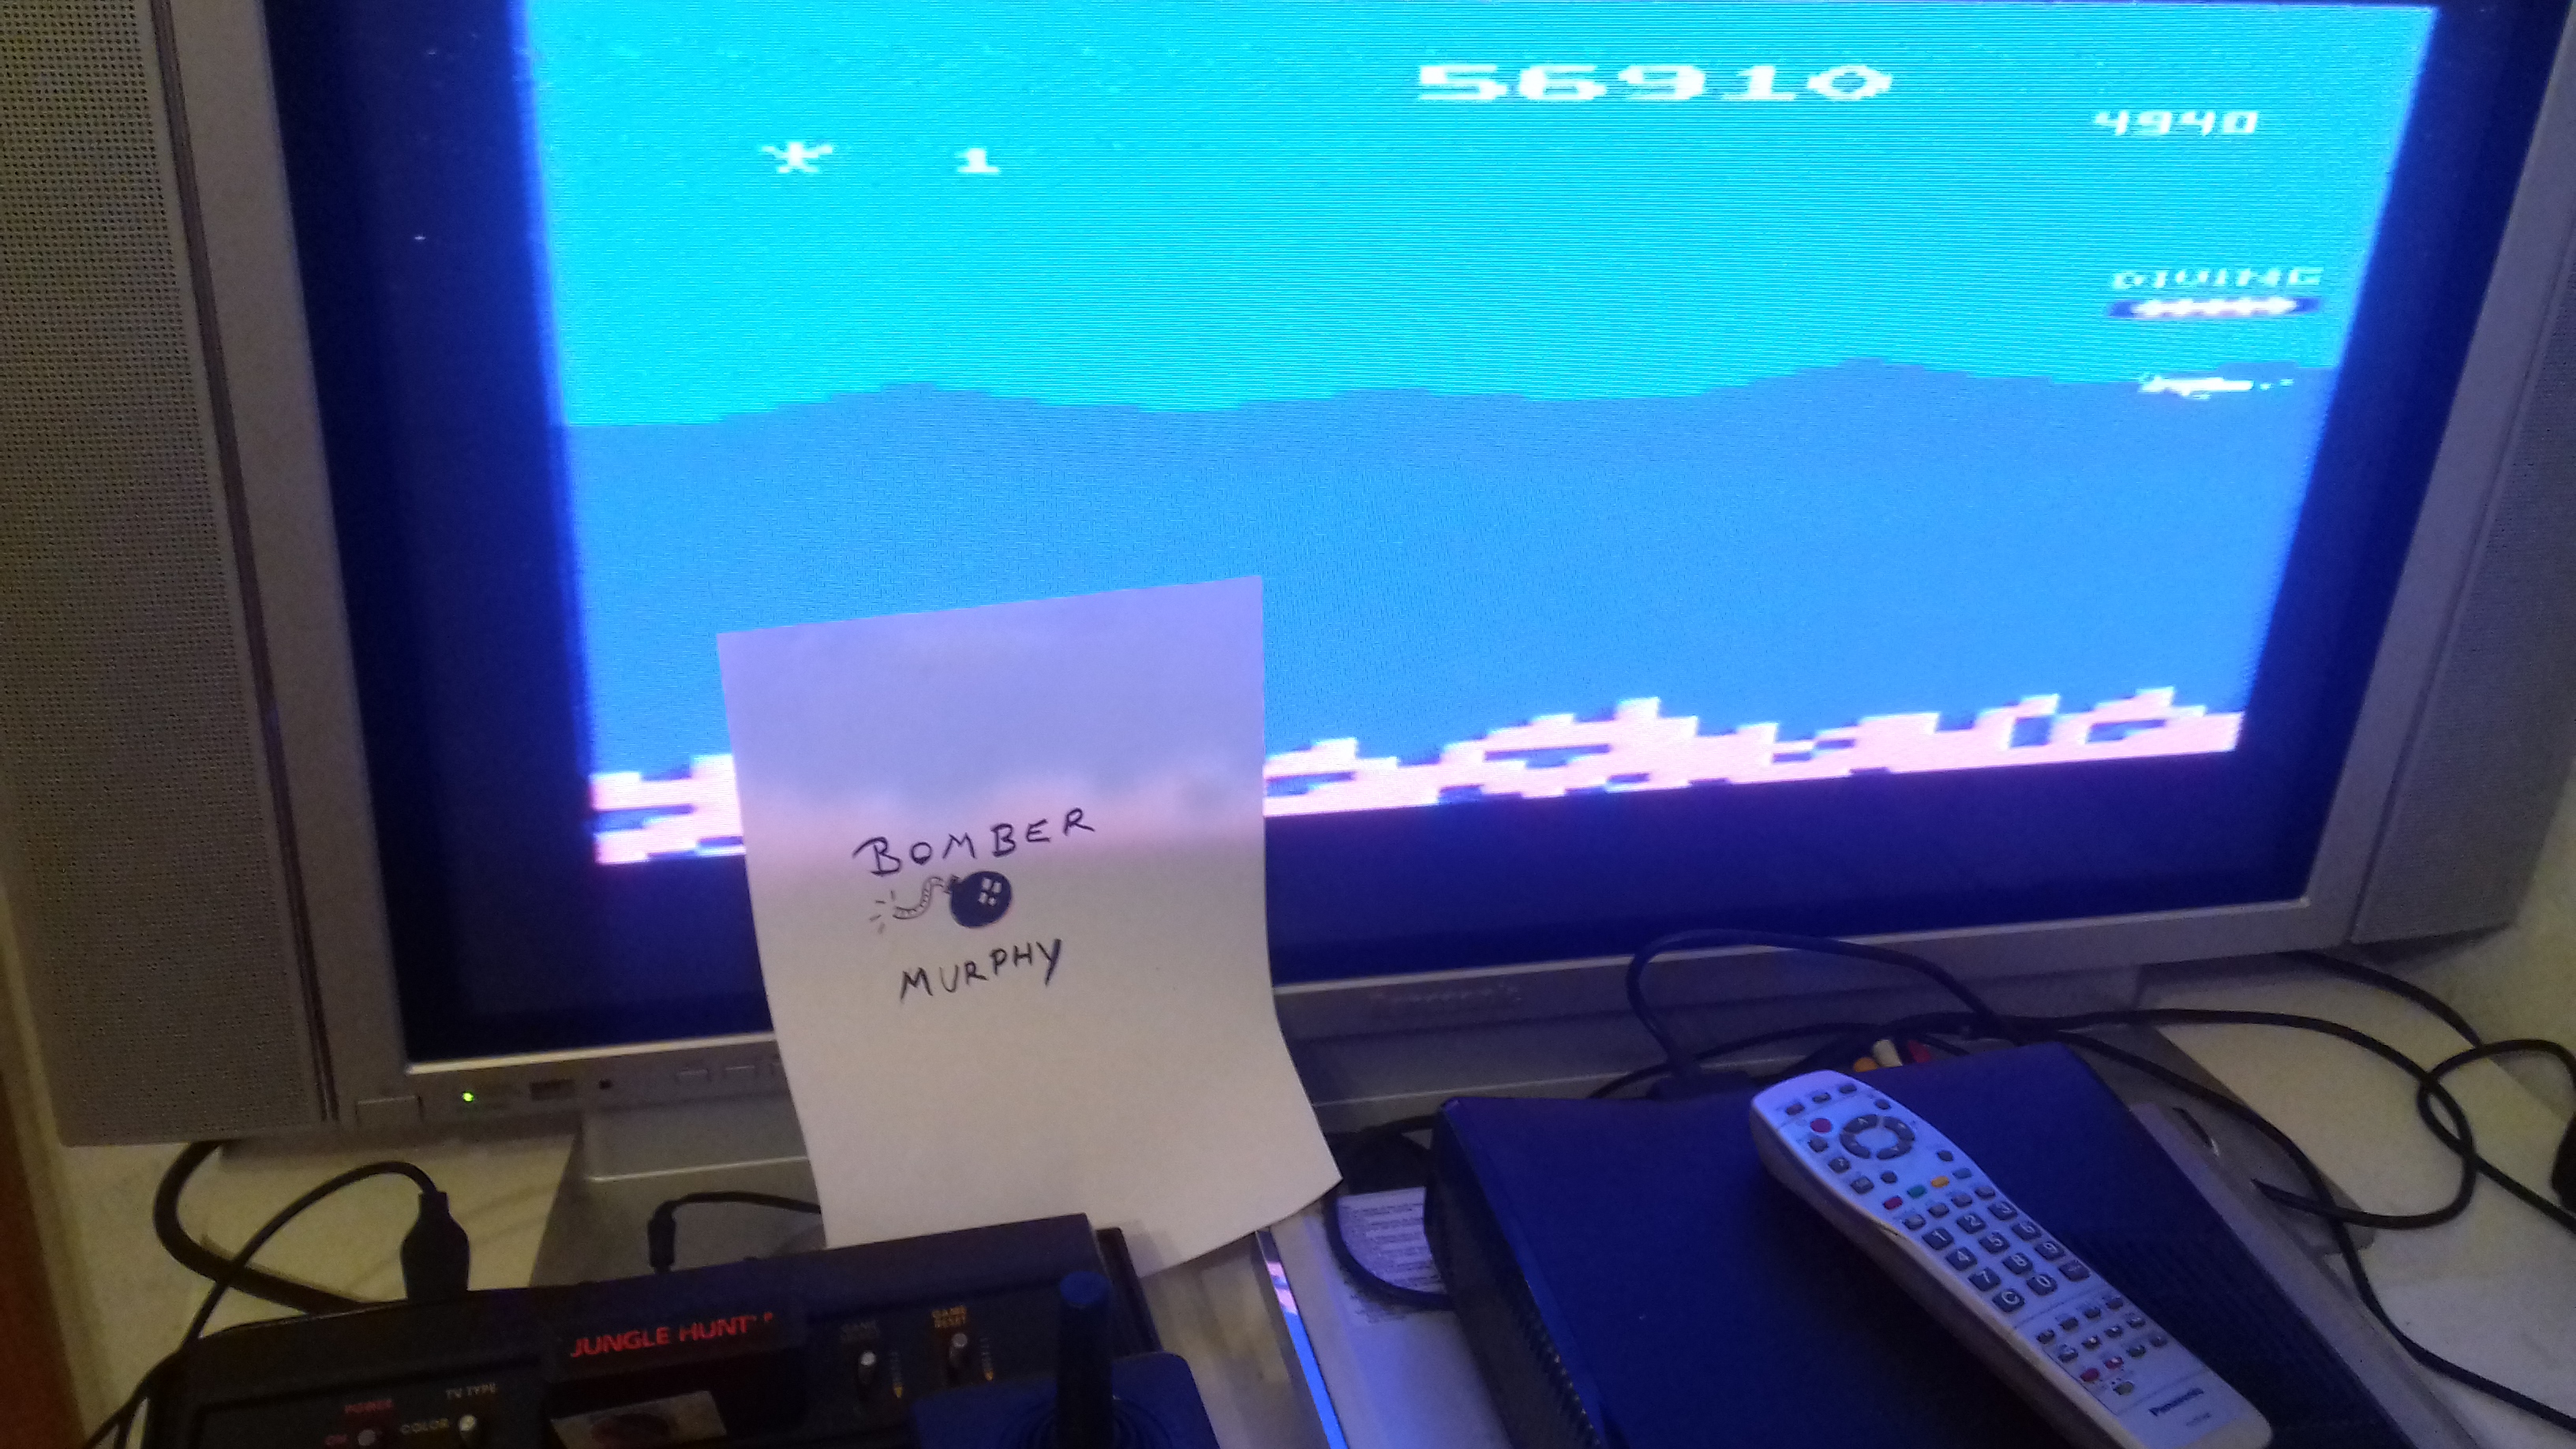 BomberMurphy: Jungle Hunt (Atari 2600) 56,910 points on 2018-03-14 14:56:09